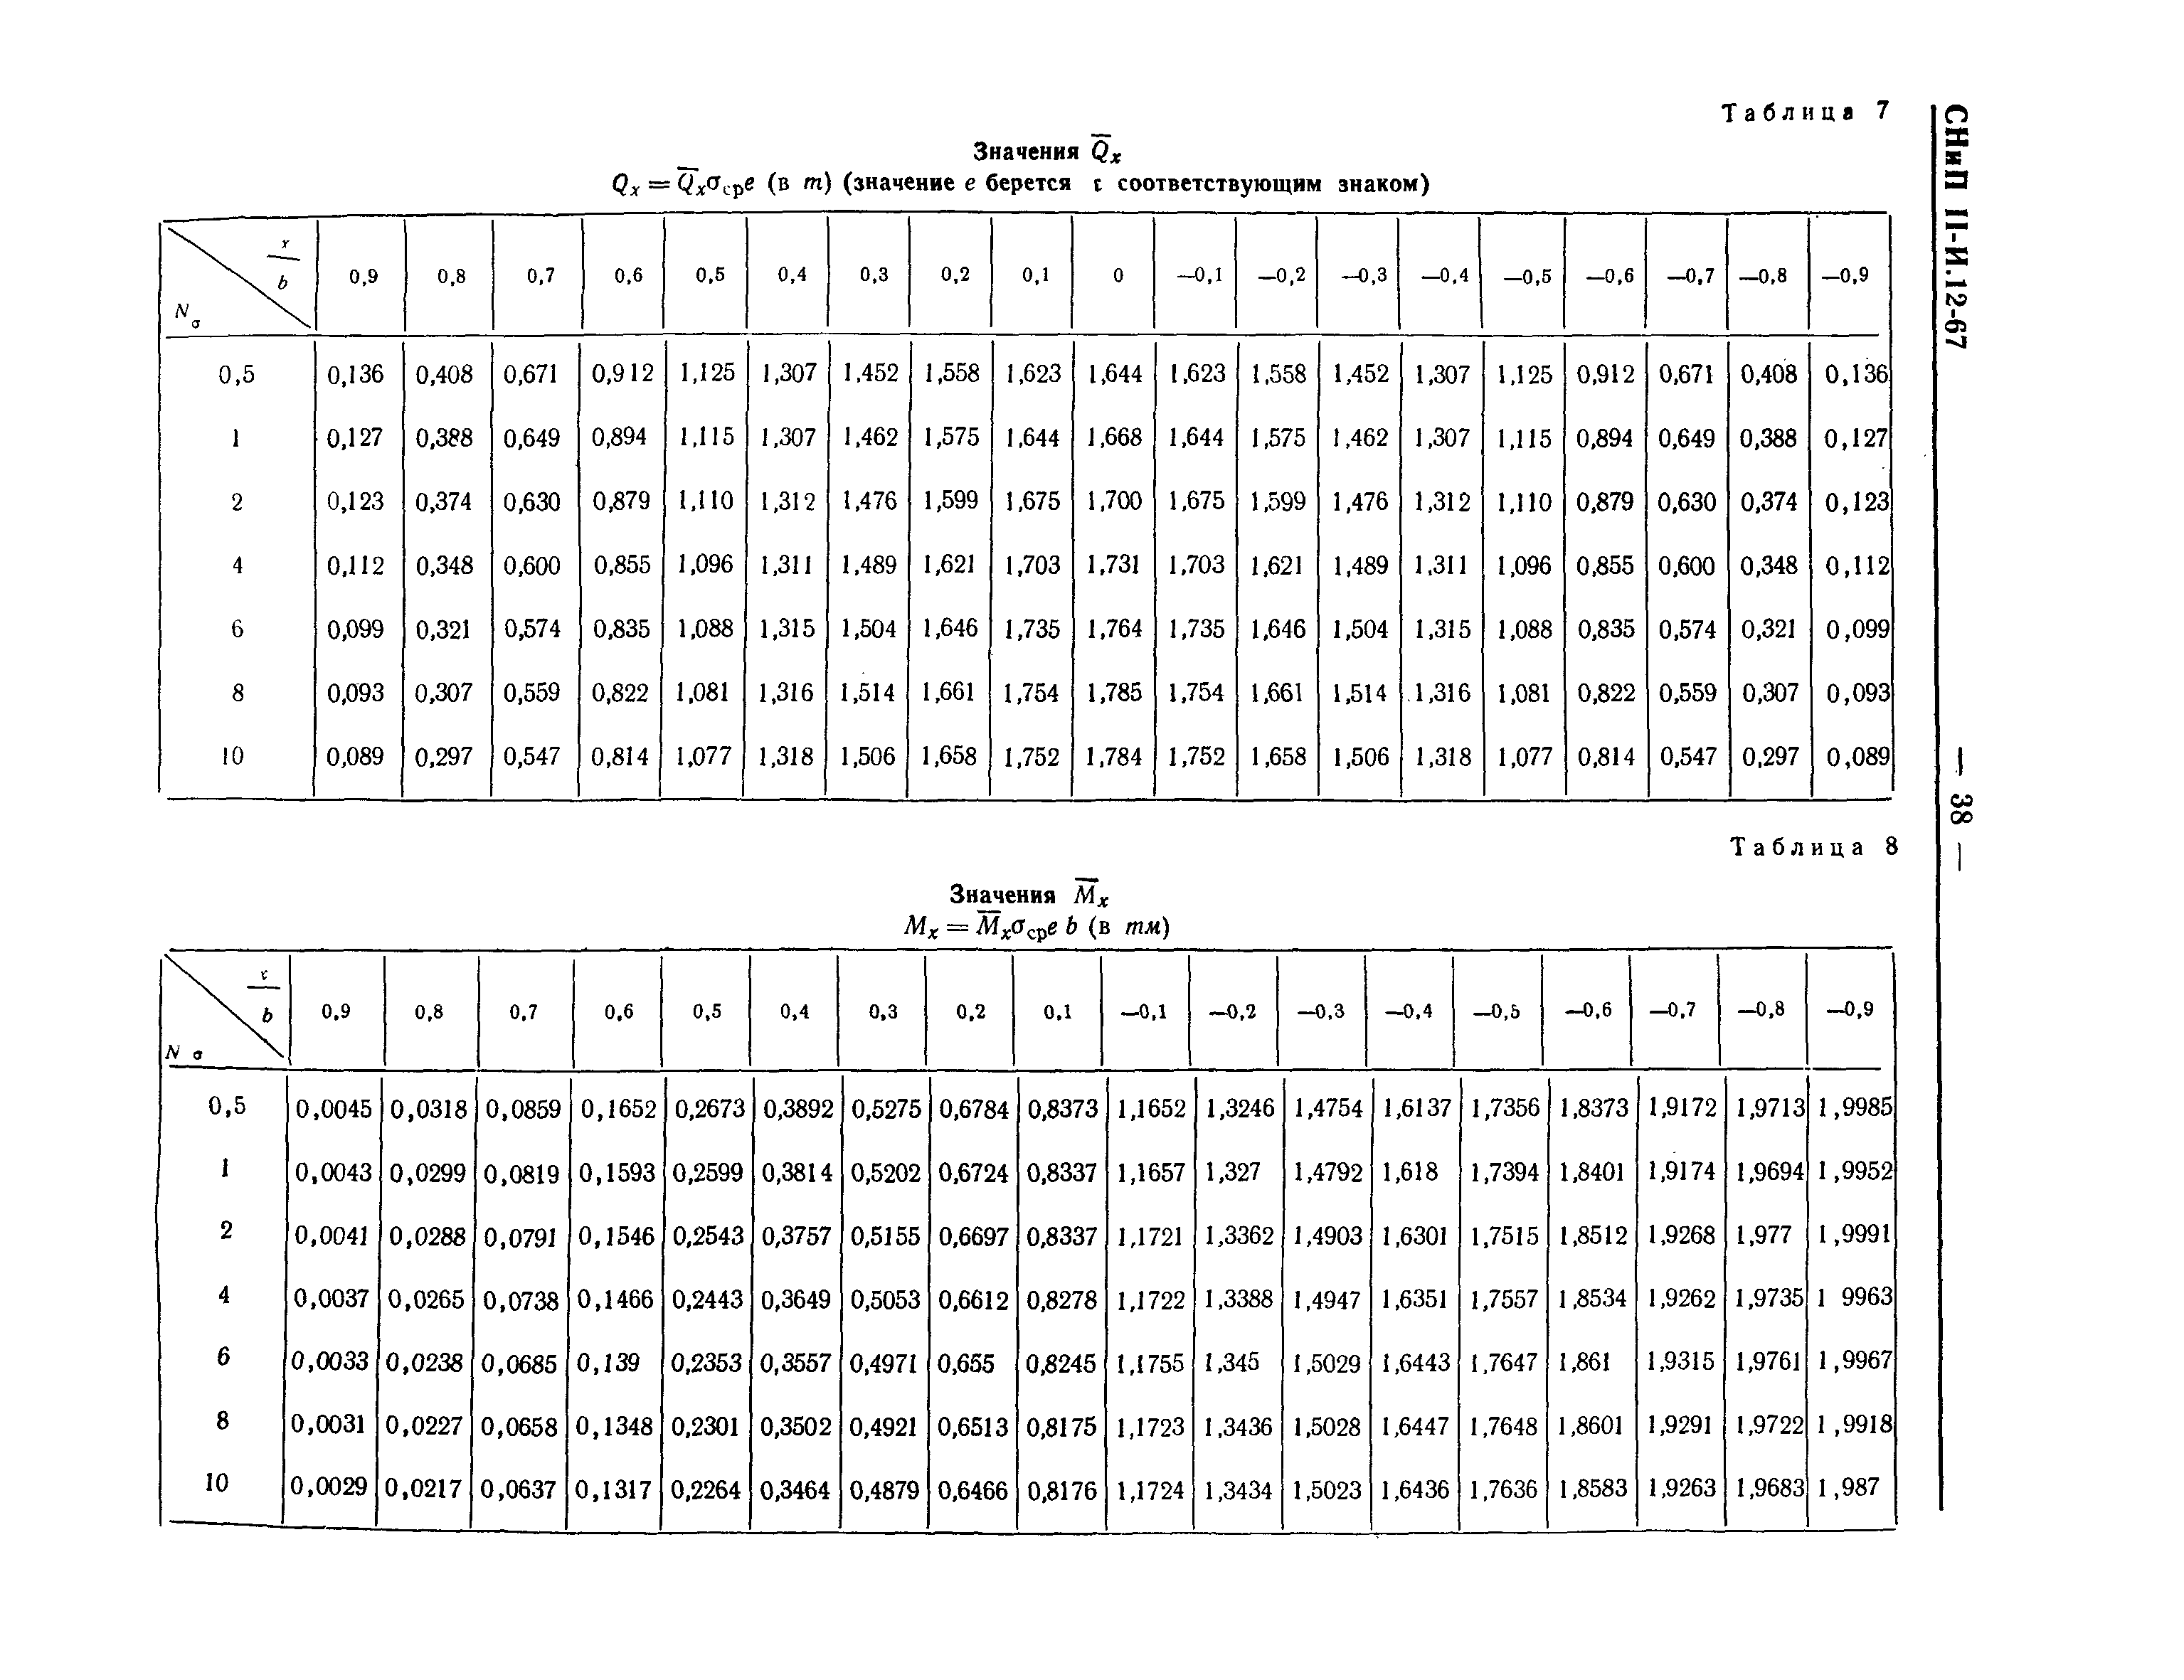 СНиП II-И.12-67